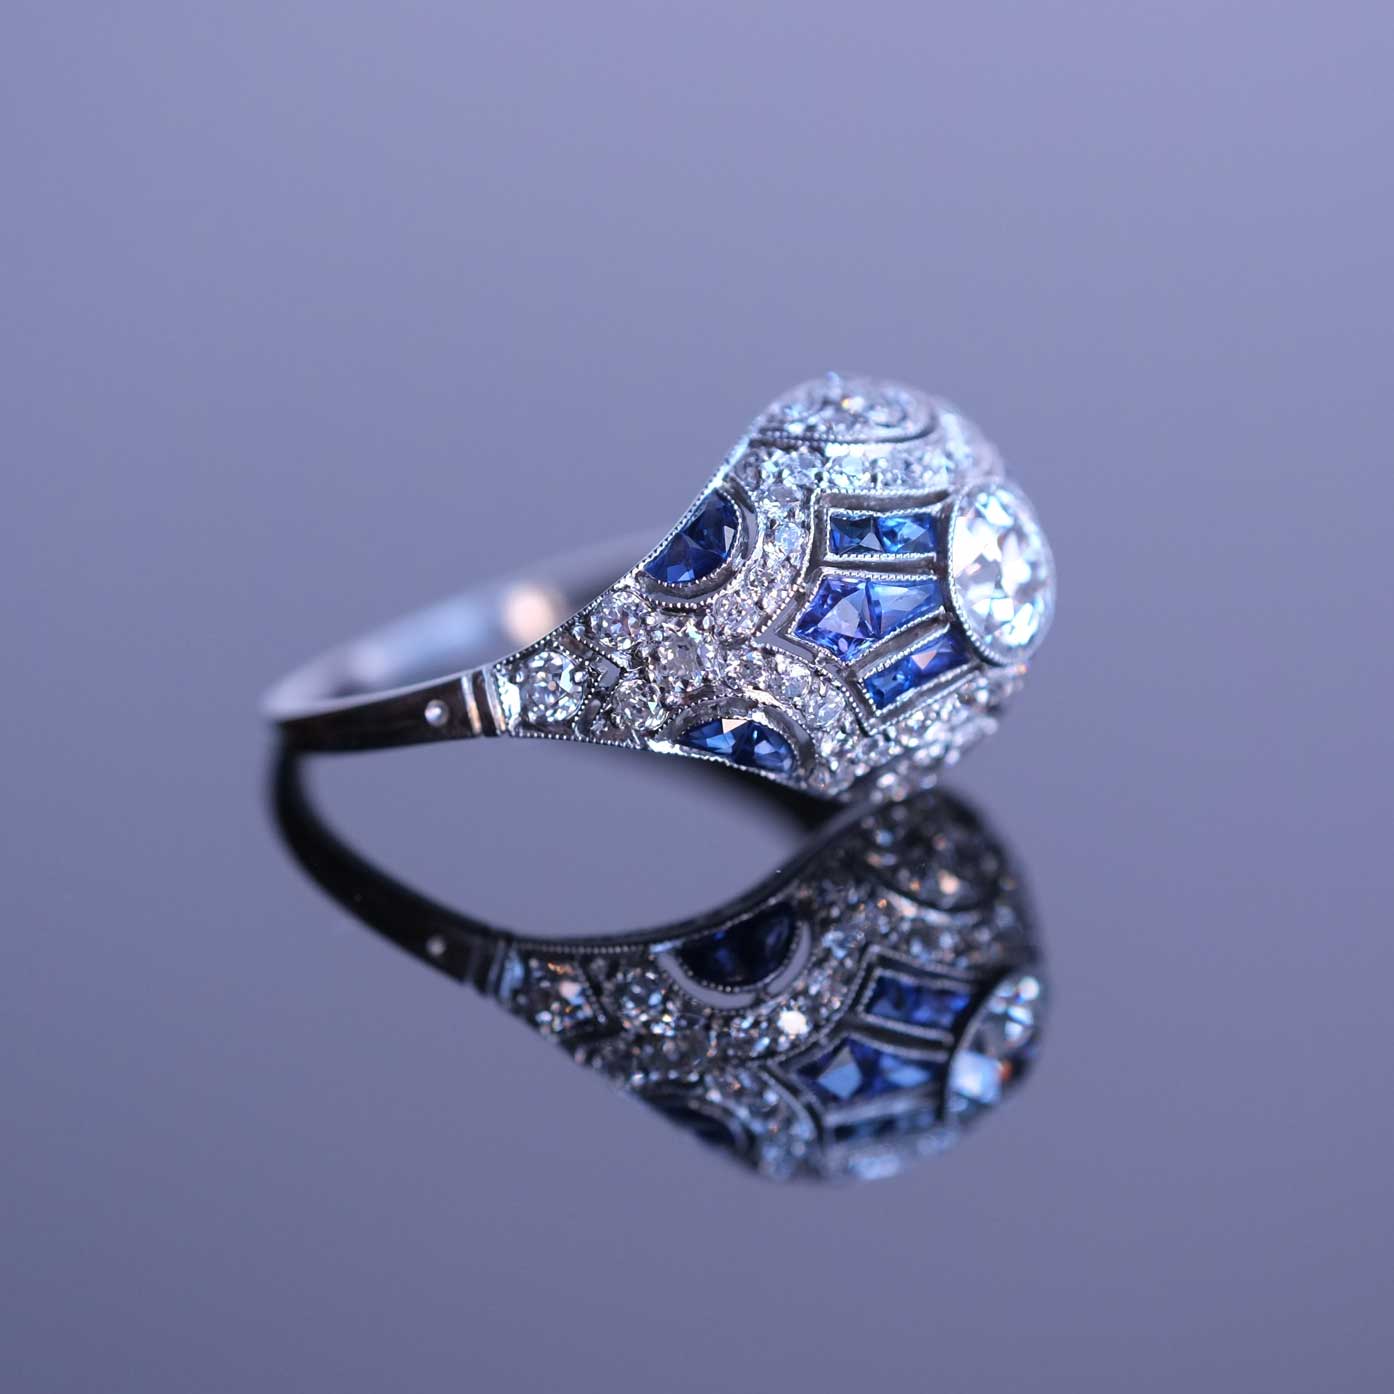 Diamonds & Sapphires Platinum Ring